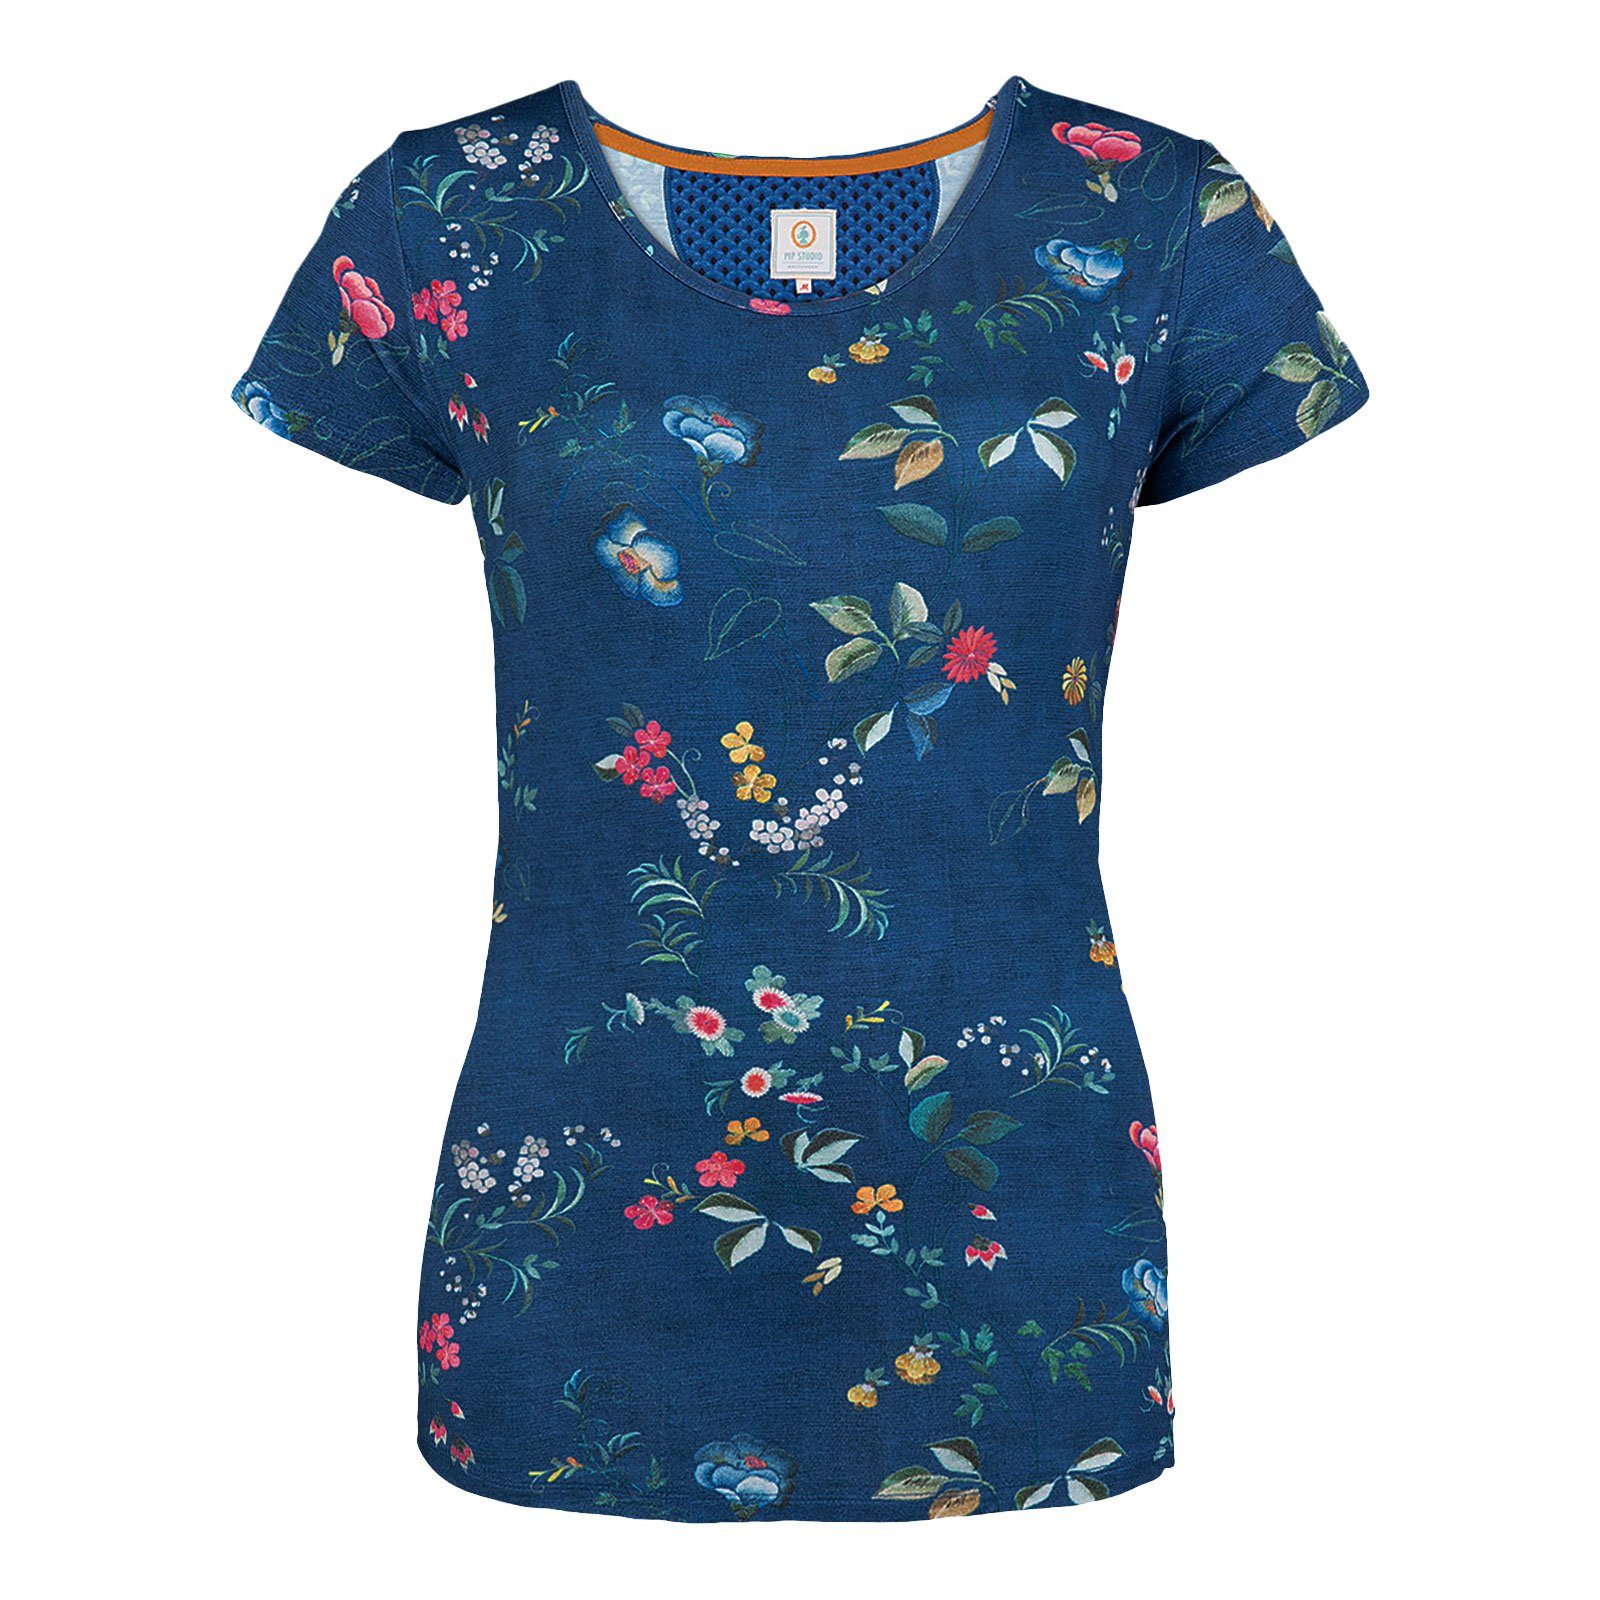 PiP Studio T-Shirt Viskosemischung tokyo aus Tokyo blue Tilly Short Sleeve dark Blossom blossom geschmeidiger